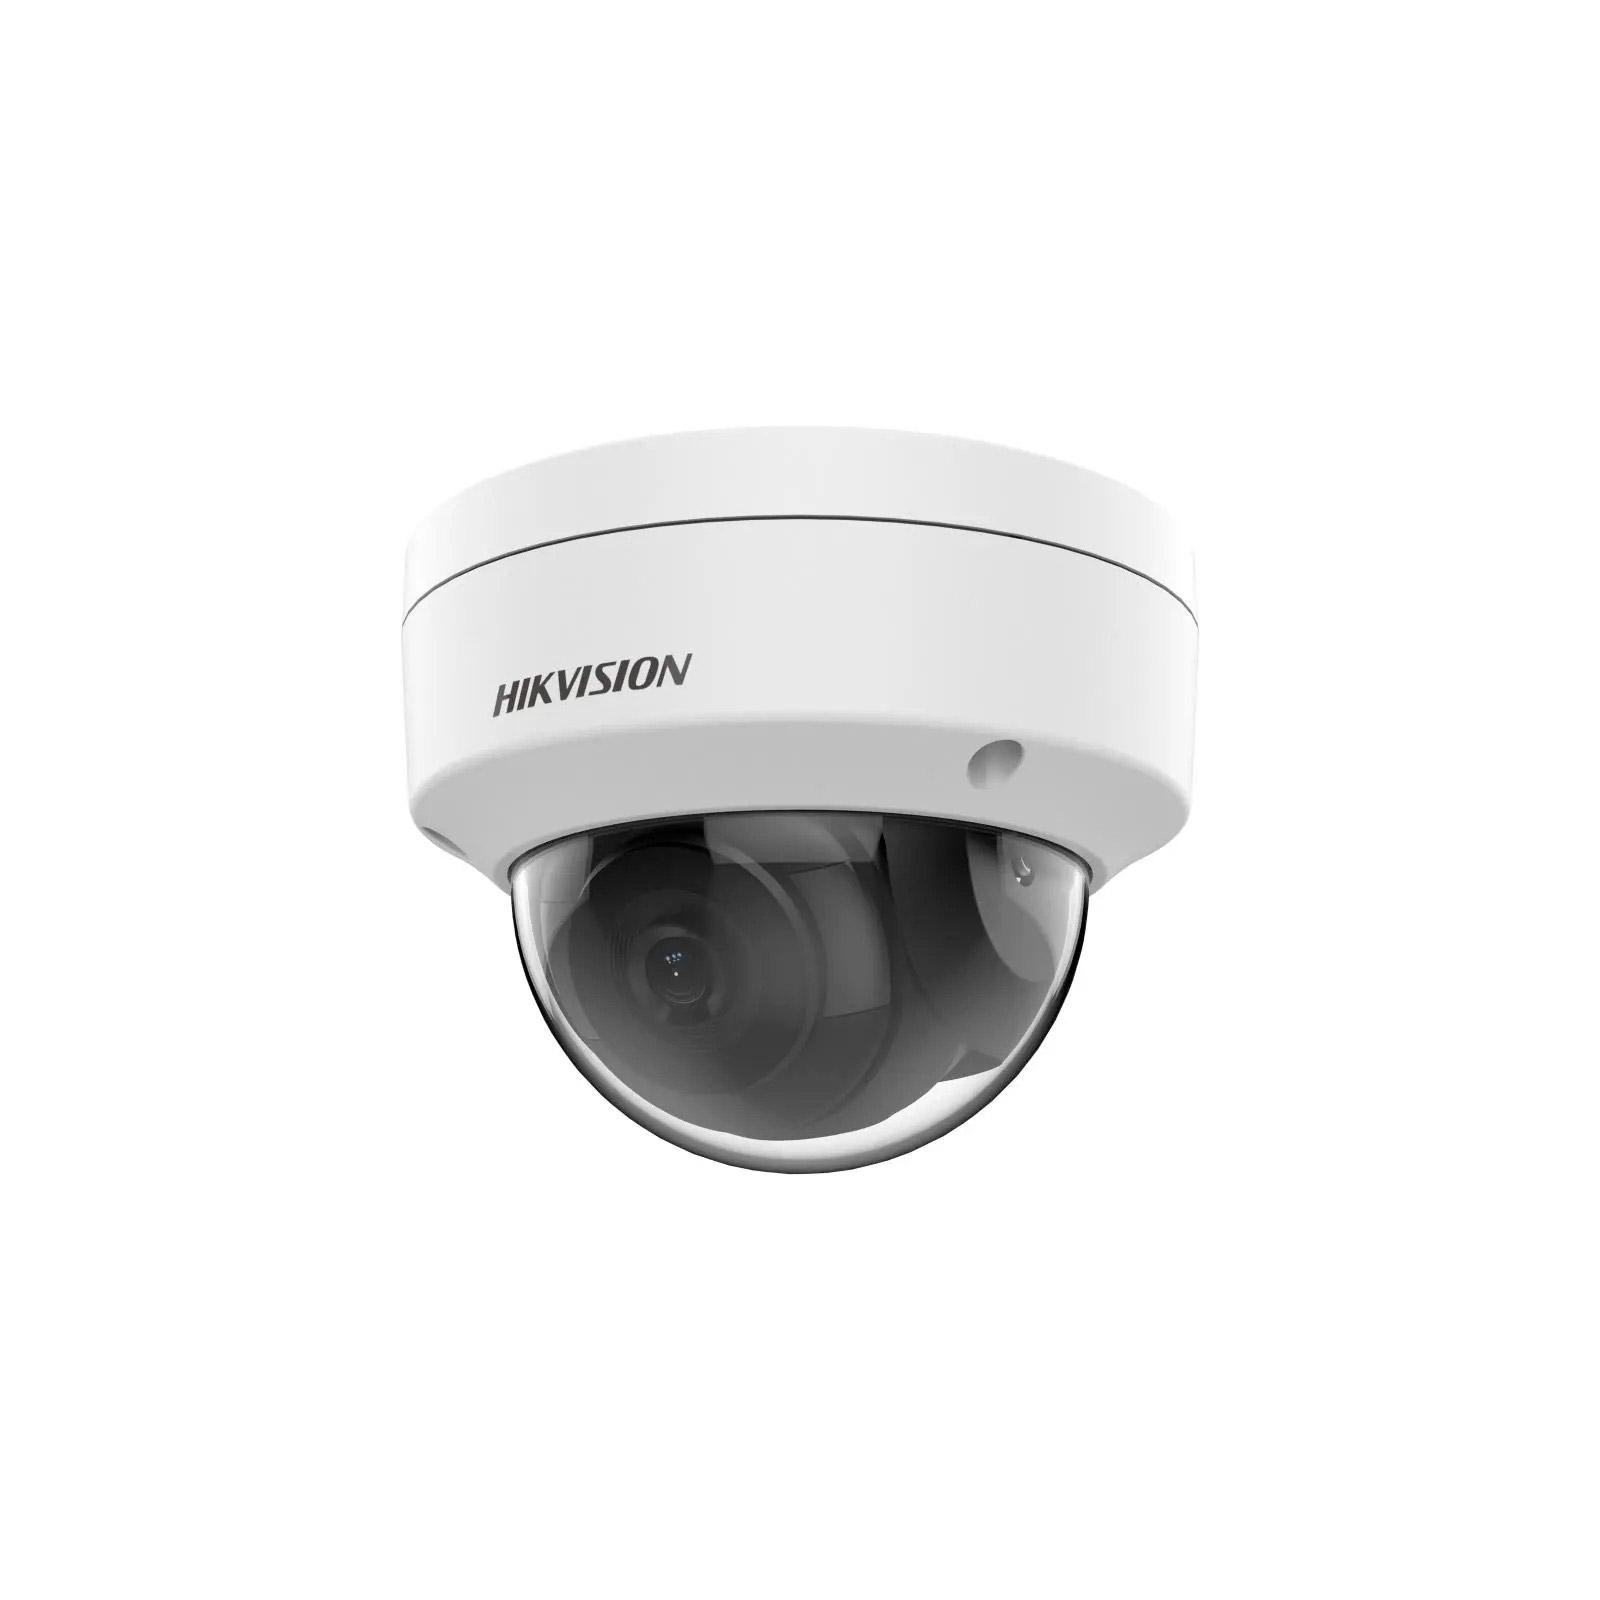 Камера видеонаблюдения Hikvision DS-2CD1143G2-I (2.8)